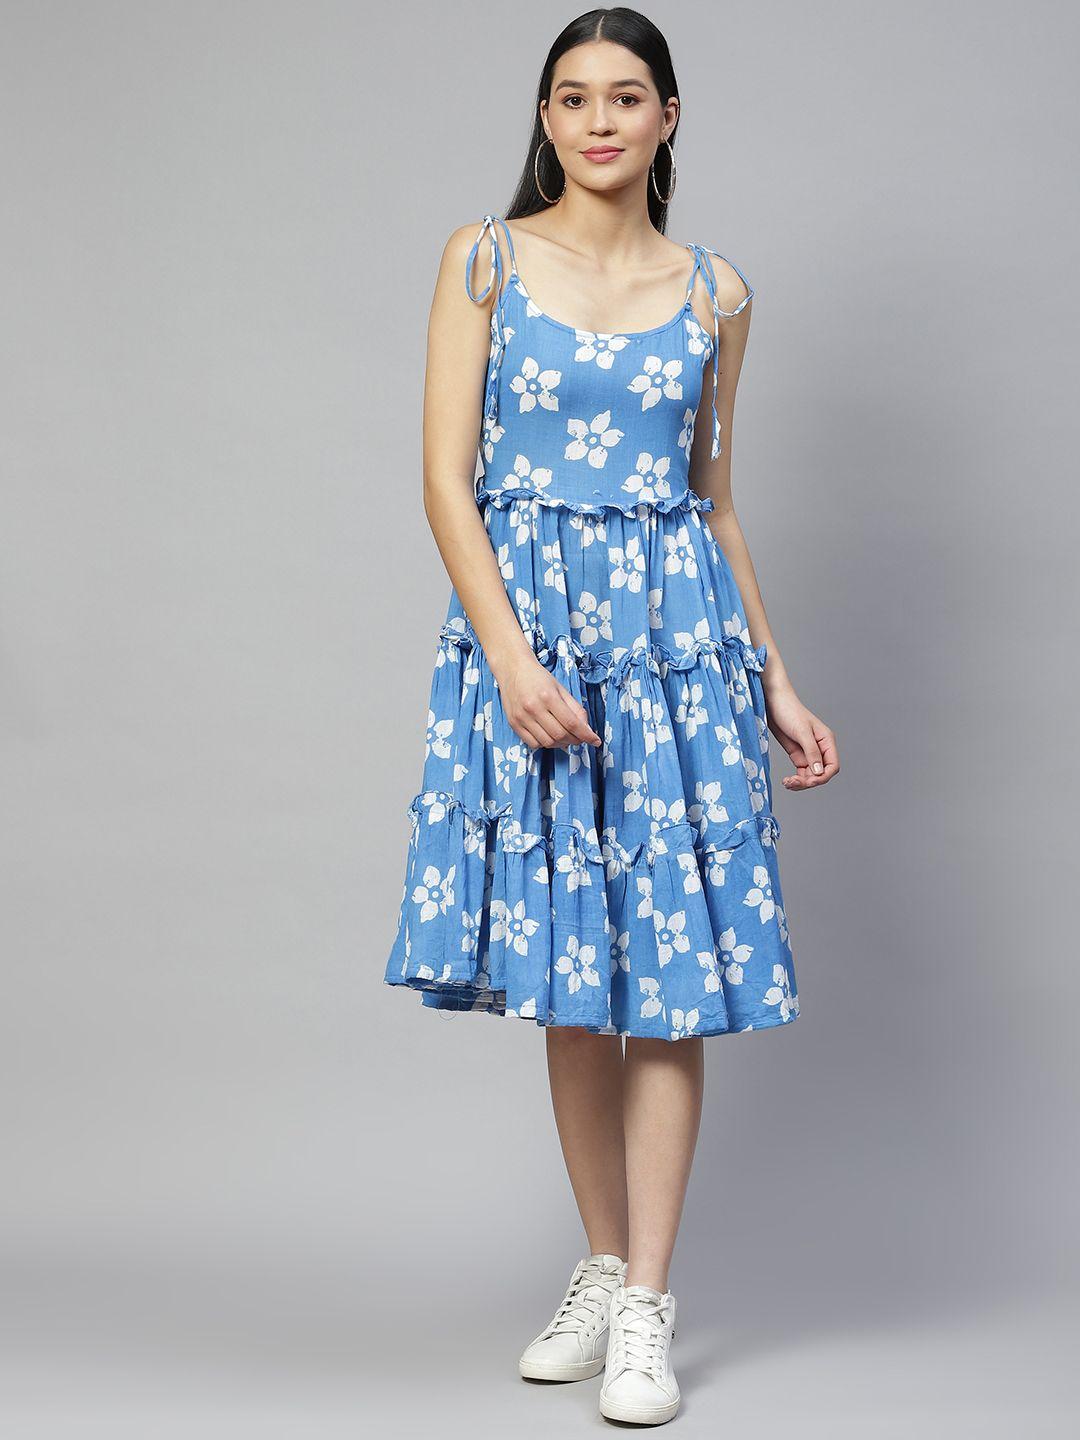 wabii blue & white cotton floral print dress